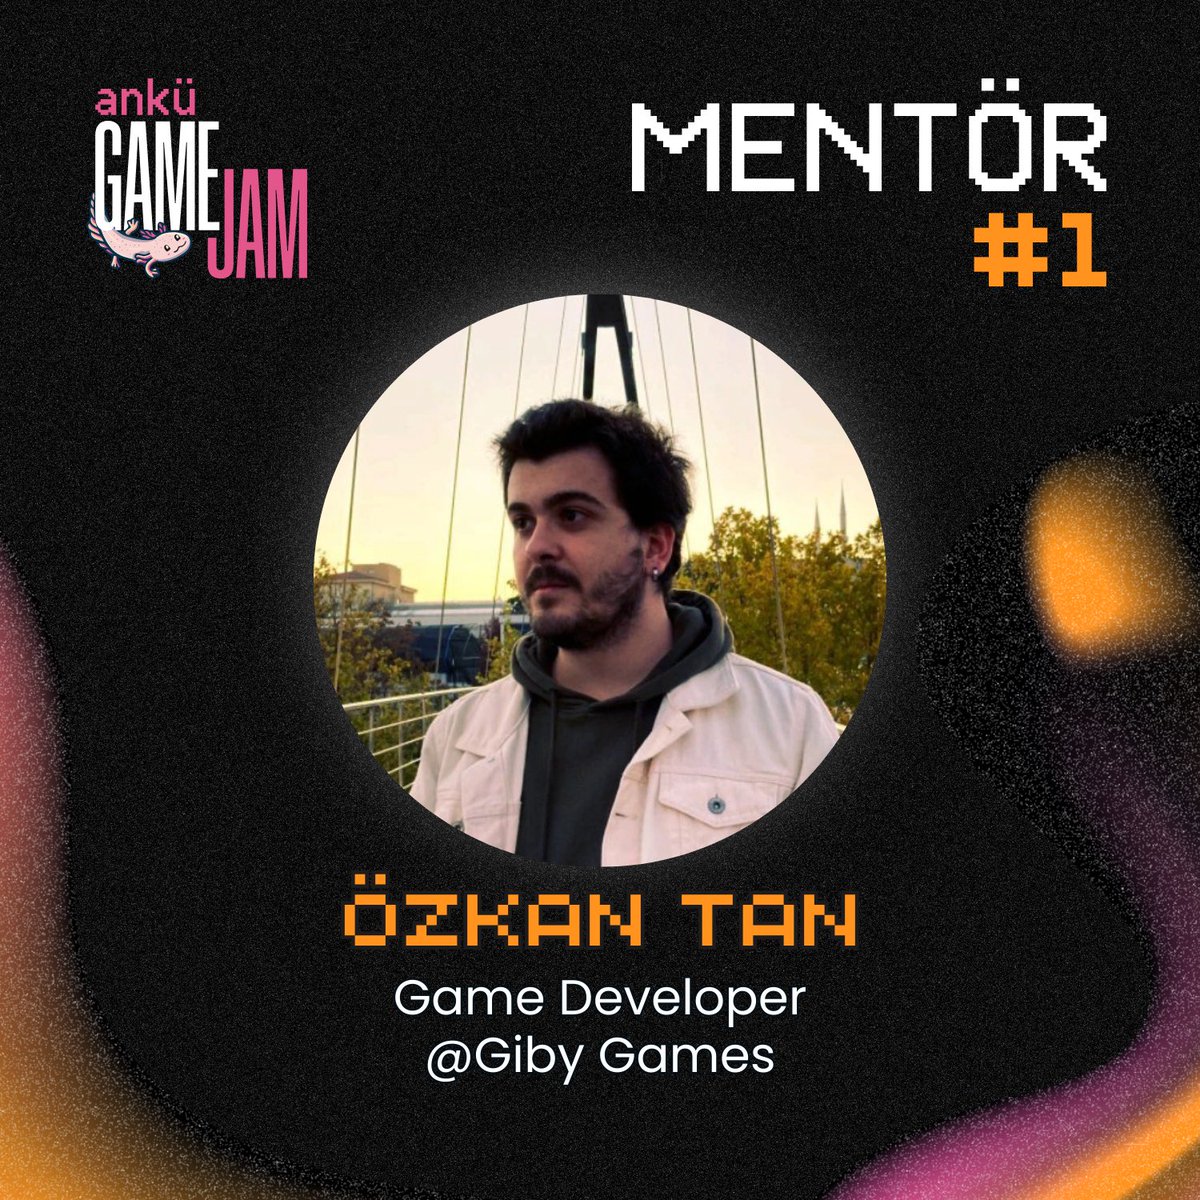 Giby Games'ten Özkan Tan ANKÜ Game Jam'de bizlere eşlik edecek ve yarışmacılarımıza mentörlük yapacak ✨

🔗 Mentörümüzün LinkedIn hesabı:
linkedin.com/in/ozkantan1